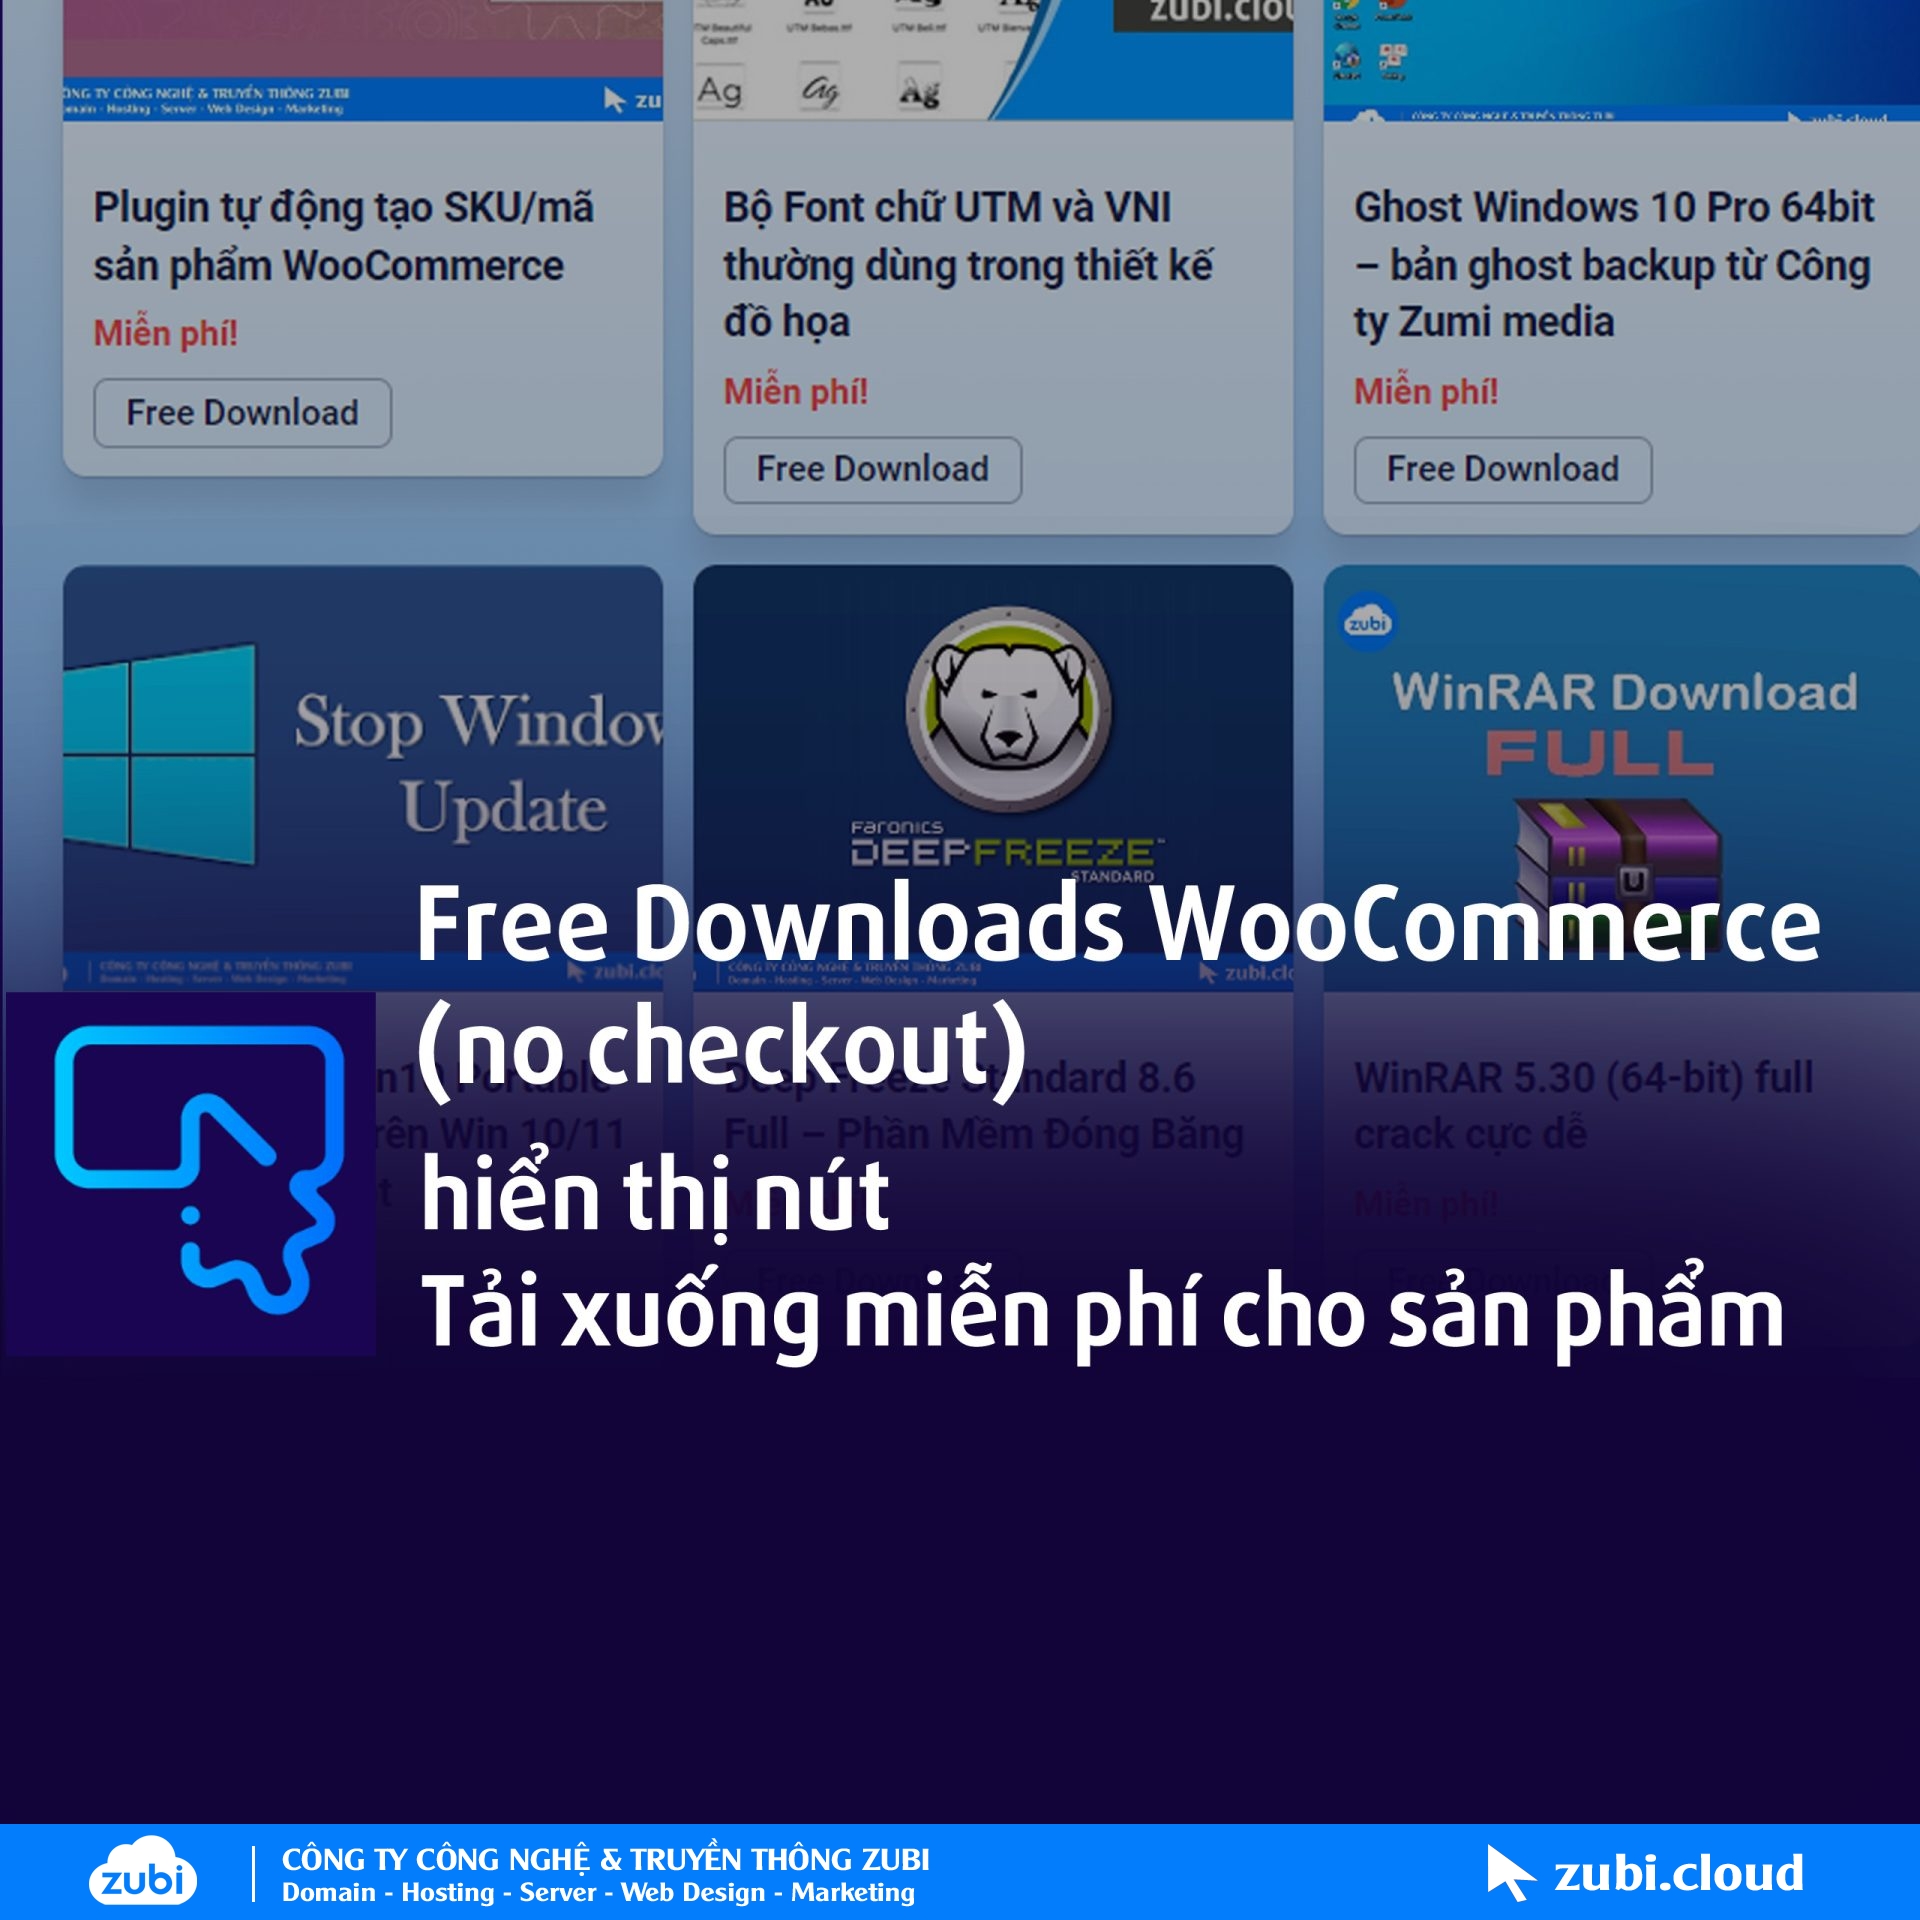 Free Downloads Woocommerce - Hiển Thị Nút Tải Xuống Miễn Phí Cho Sản Phẩm